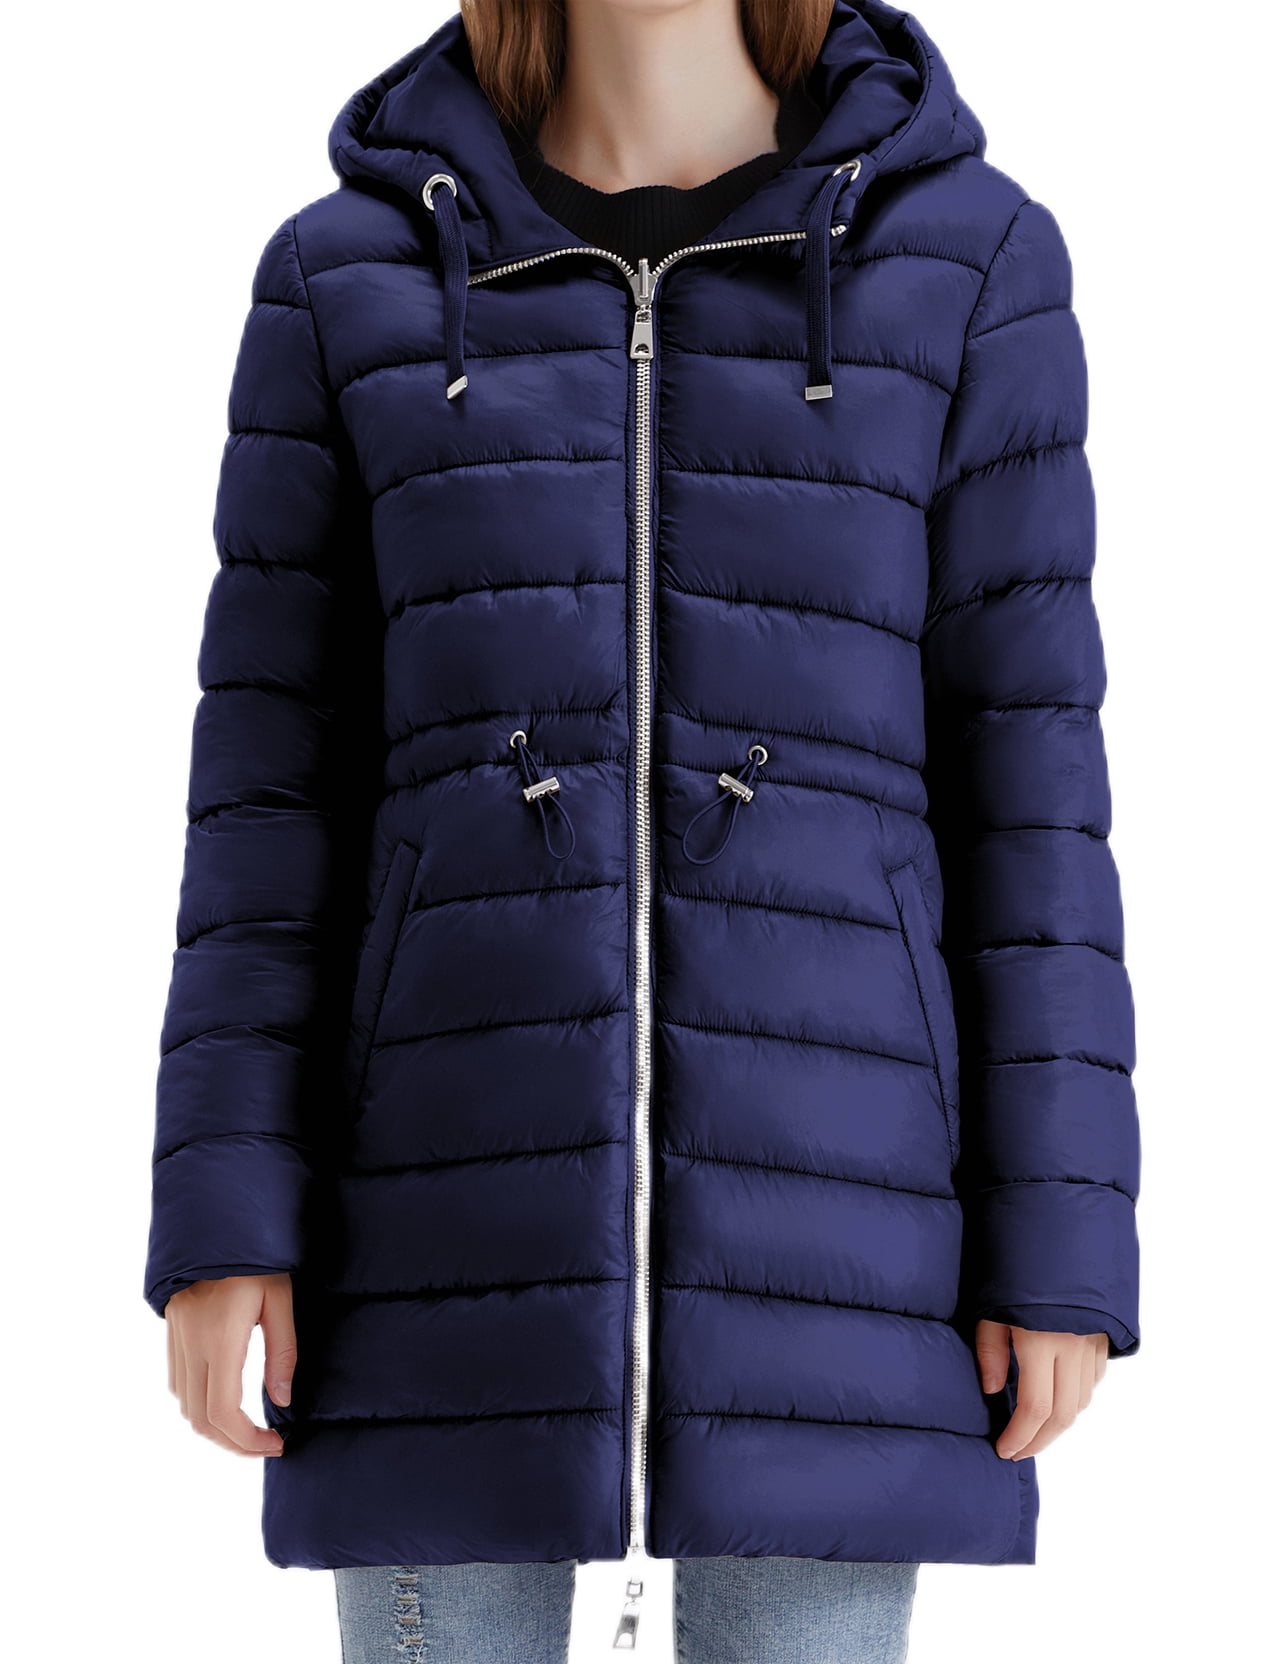 LEZMORE Cuff Heavy Lapel Jacket Winter Jacket Warm Furry Coat Men's Coat  M-3XL